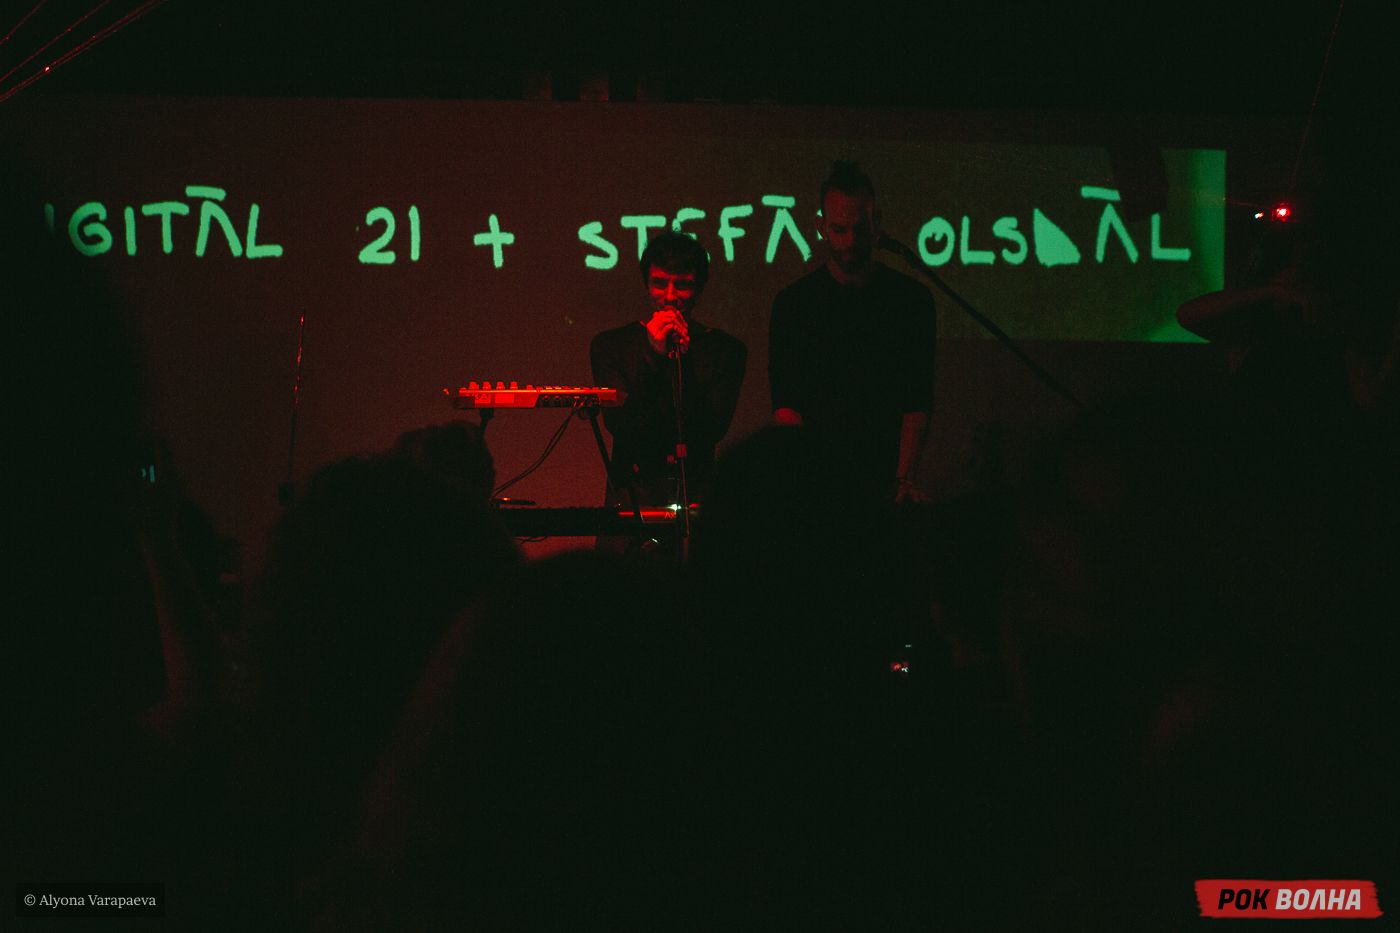 Световые лучи и гипнотические ритмы в "Доме Силы": Digital 21 + Stefan Olsdal в Москве